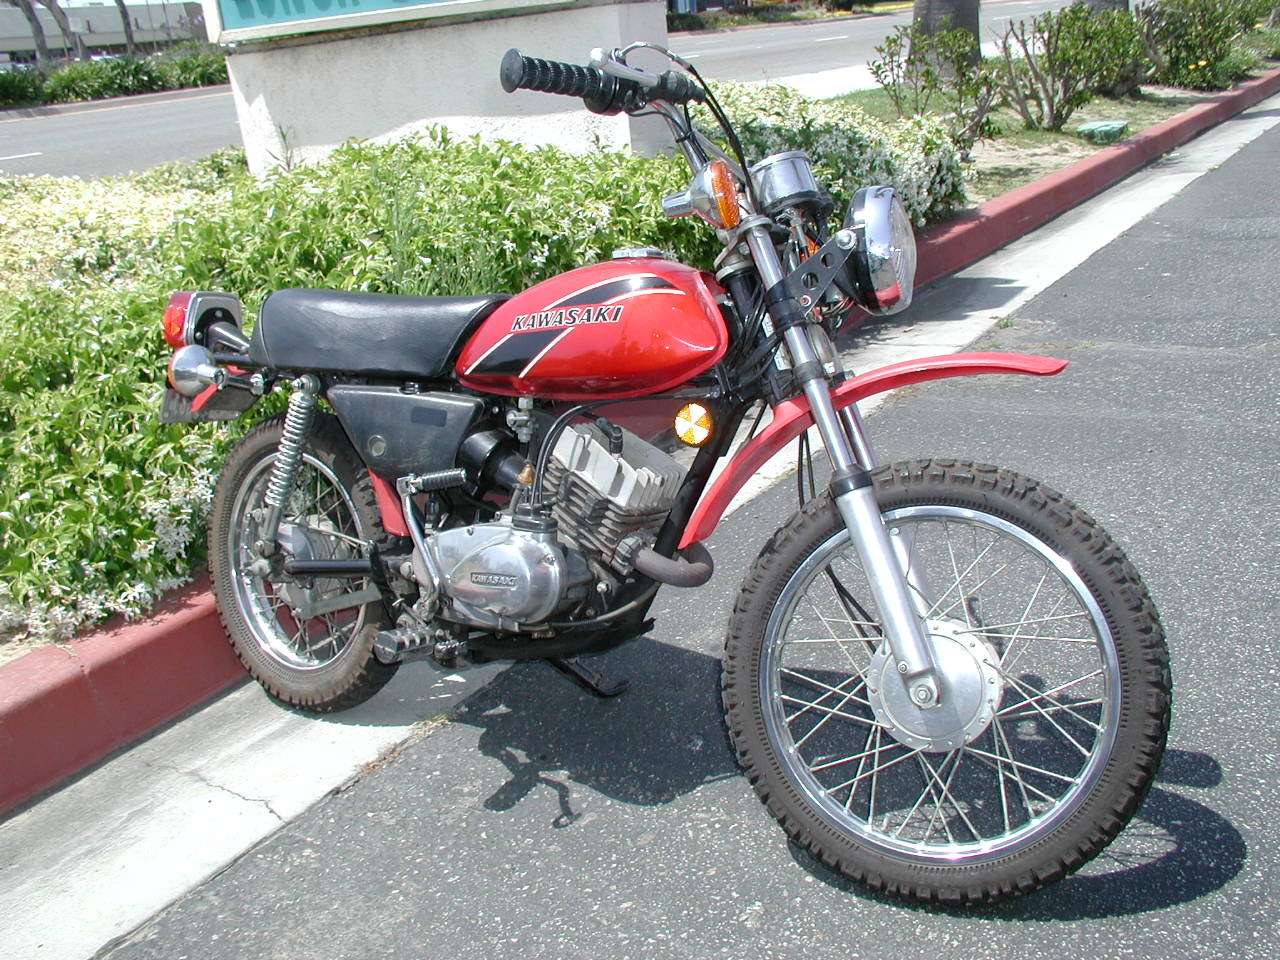 Kawasaki 90